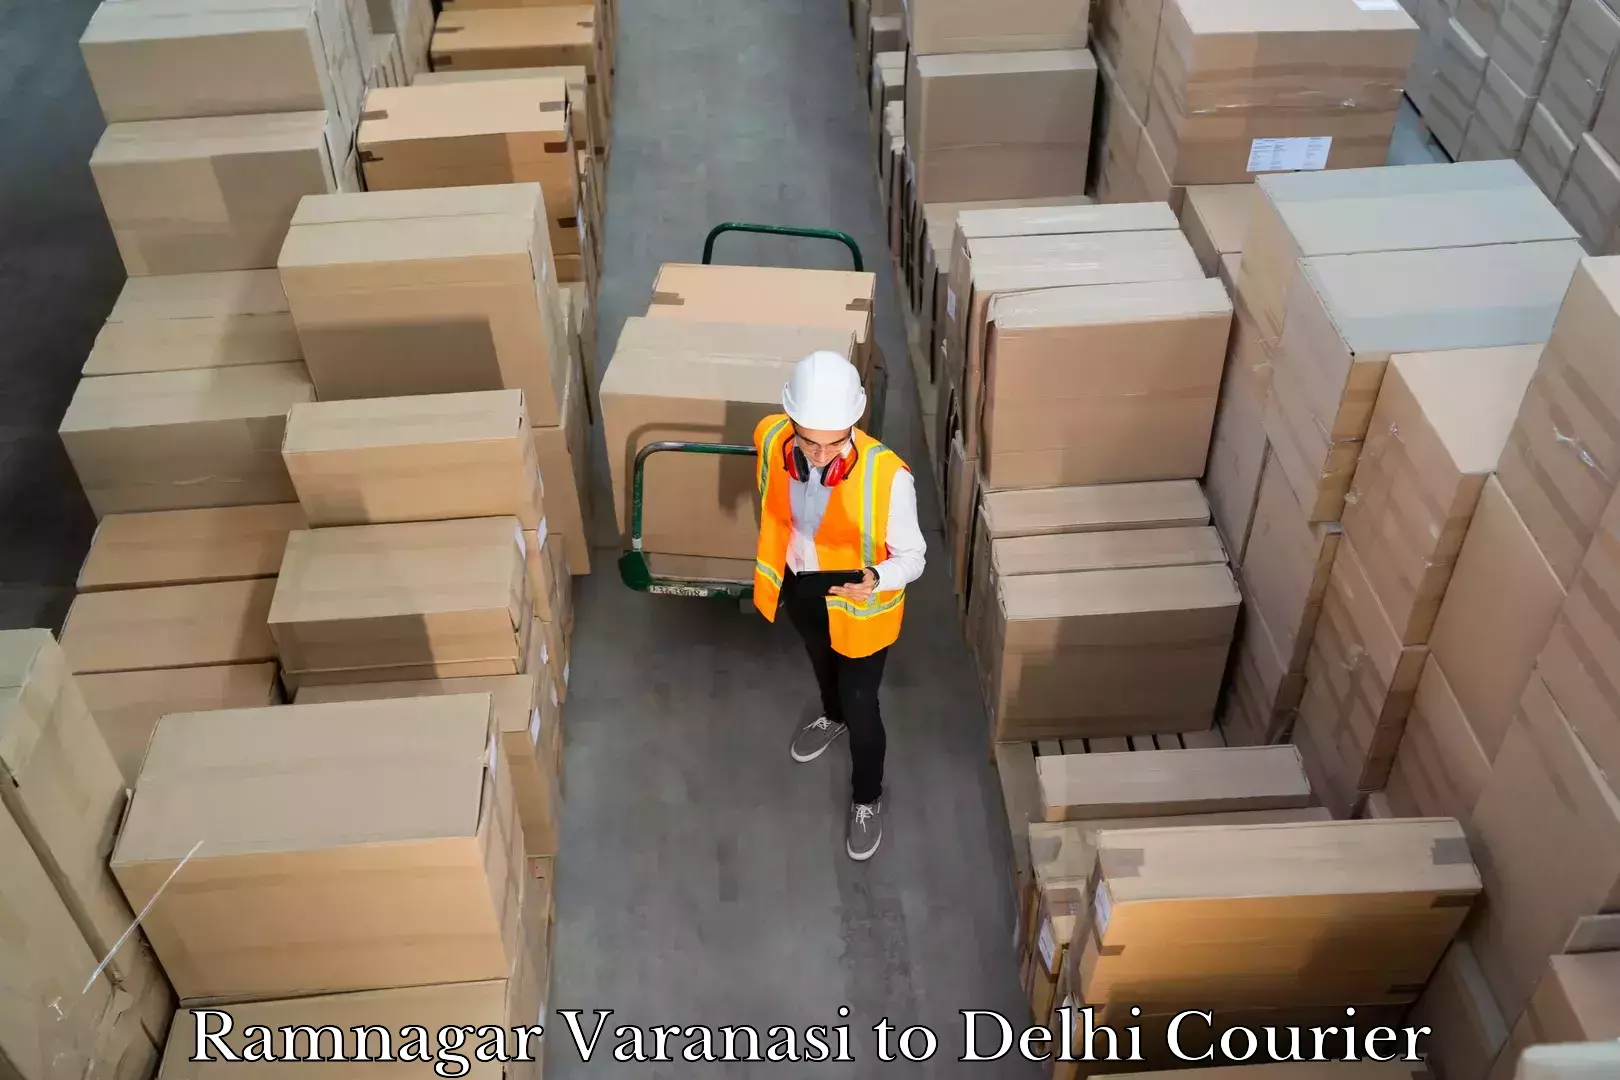 Urgent luggage shipment Ramnagar Varanasi to Delhi